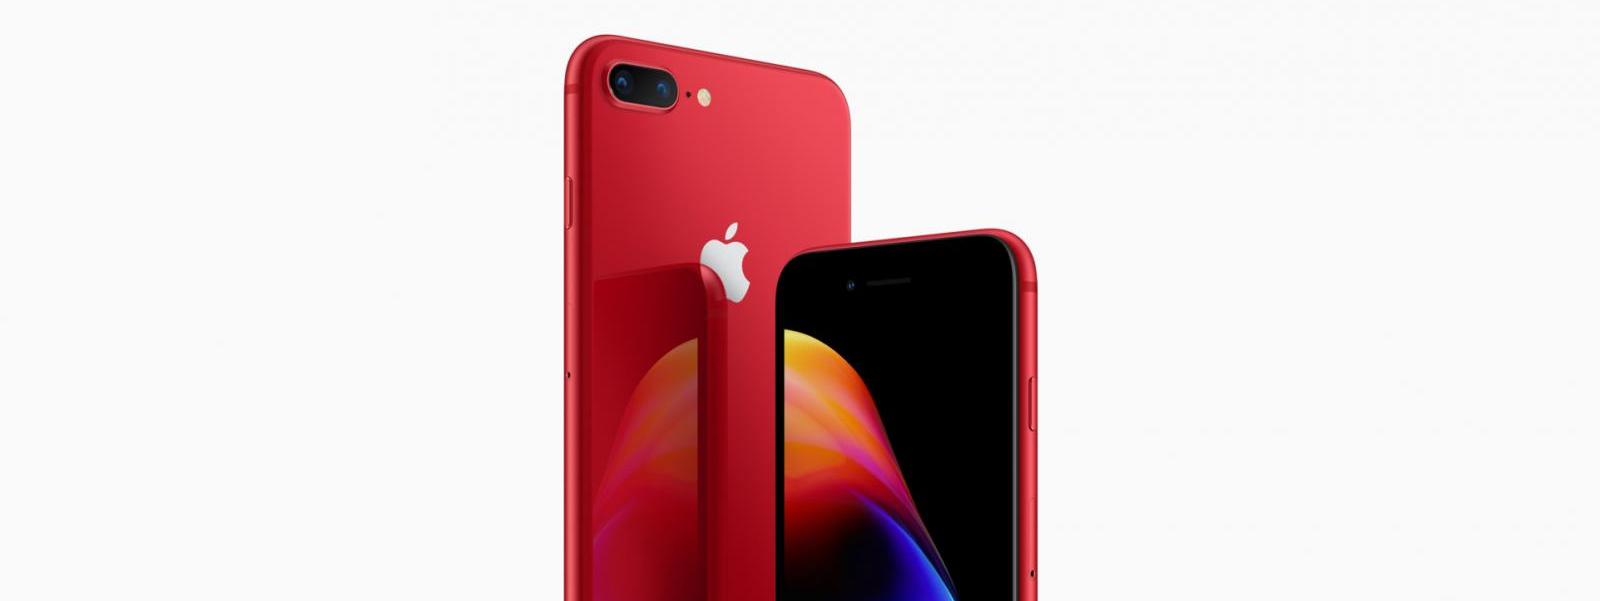 iPhone 8 (PRODUCT)RED ya es oficial: así es la edición especial del iPhone 8 y el iPhone 8 Plus en la lucha contra el VIH